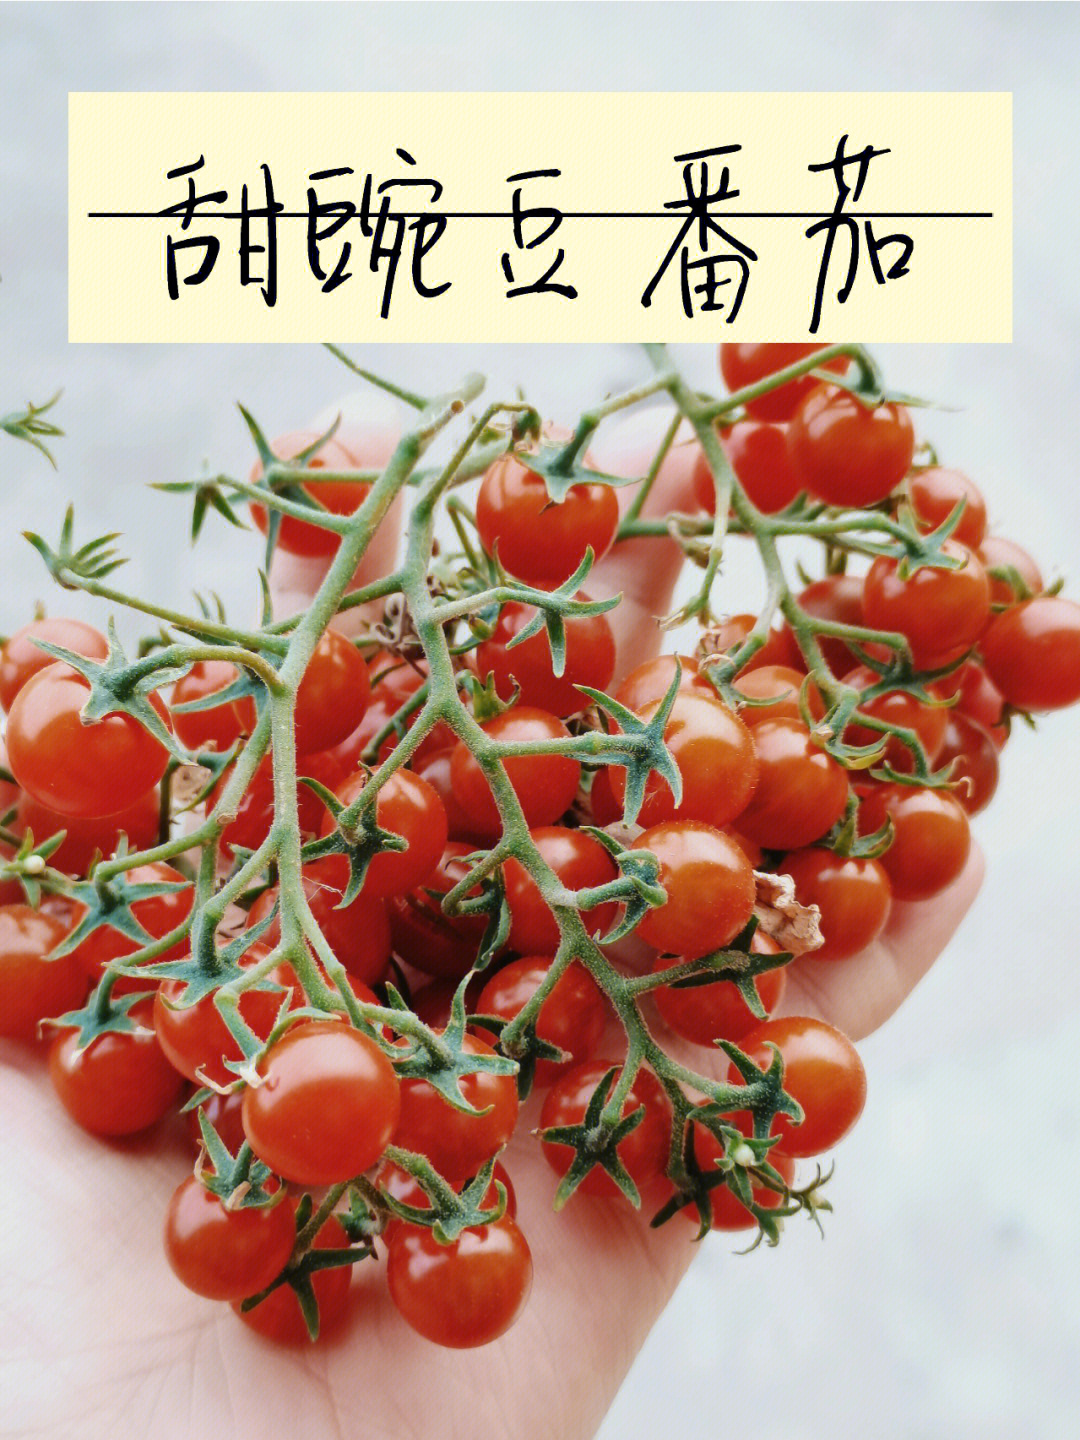 甜豌豆番茄足够可爱且足够难吃